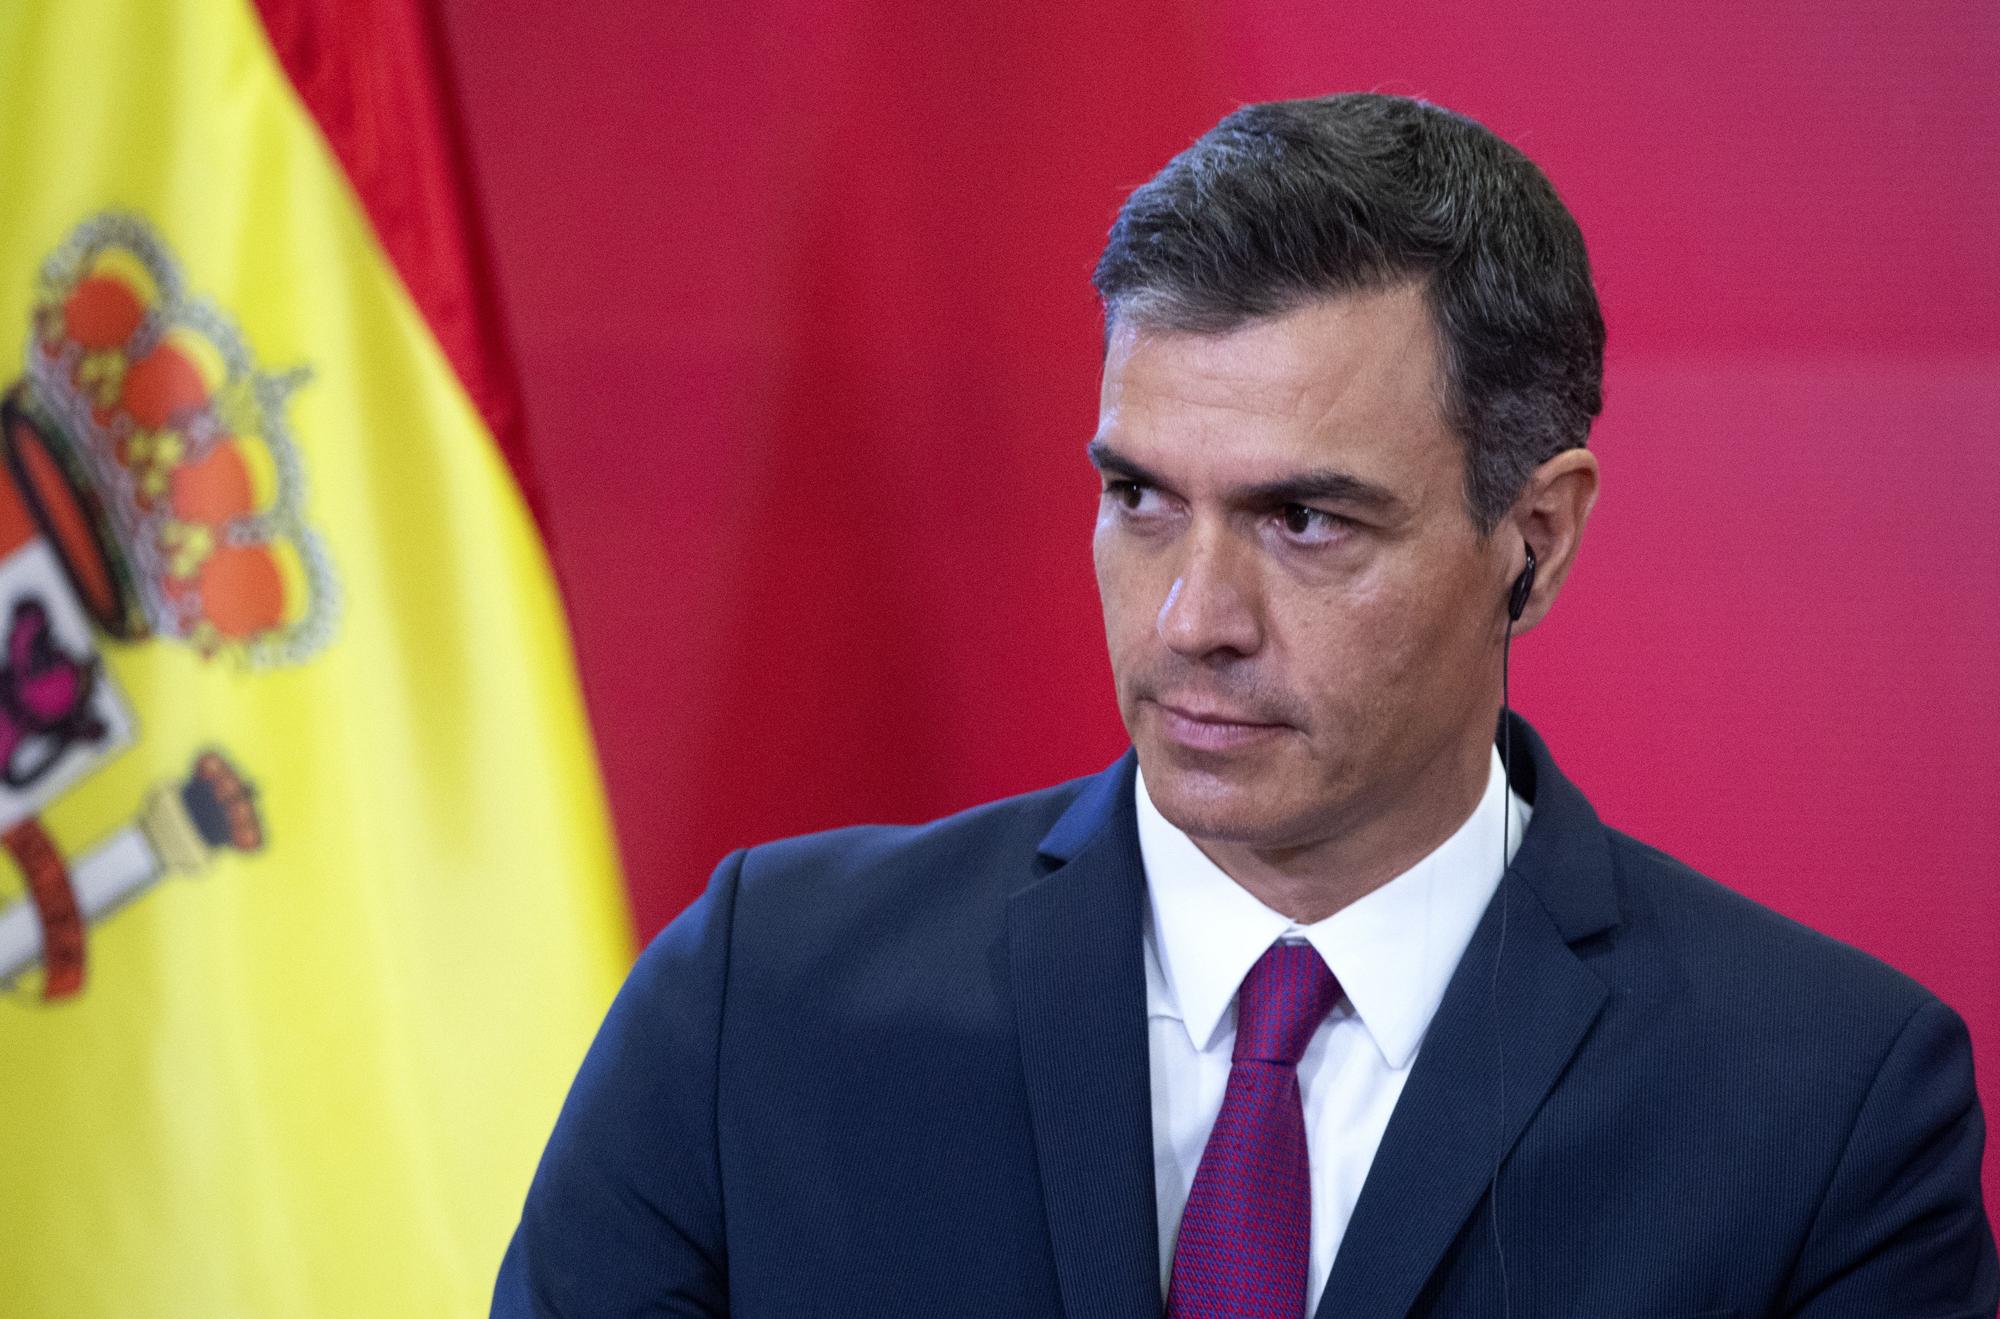 El presidente del Gobierno, Pedro Sánchez, en su comparecencia ante los medios en Skopje, Macedonia del Norte, durante su visita oficial al país de este fin de semana.